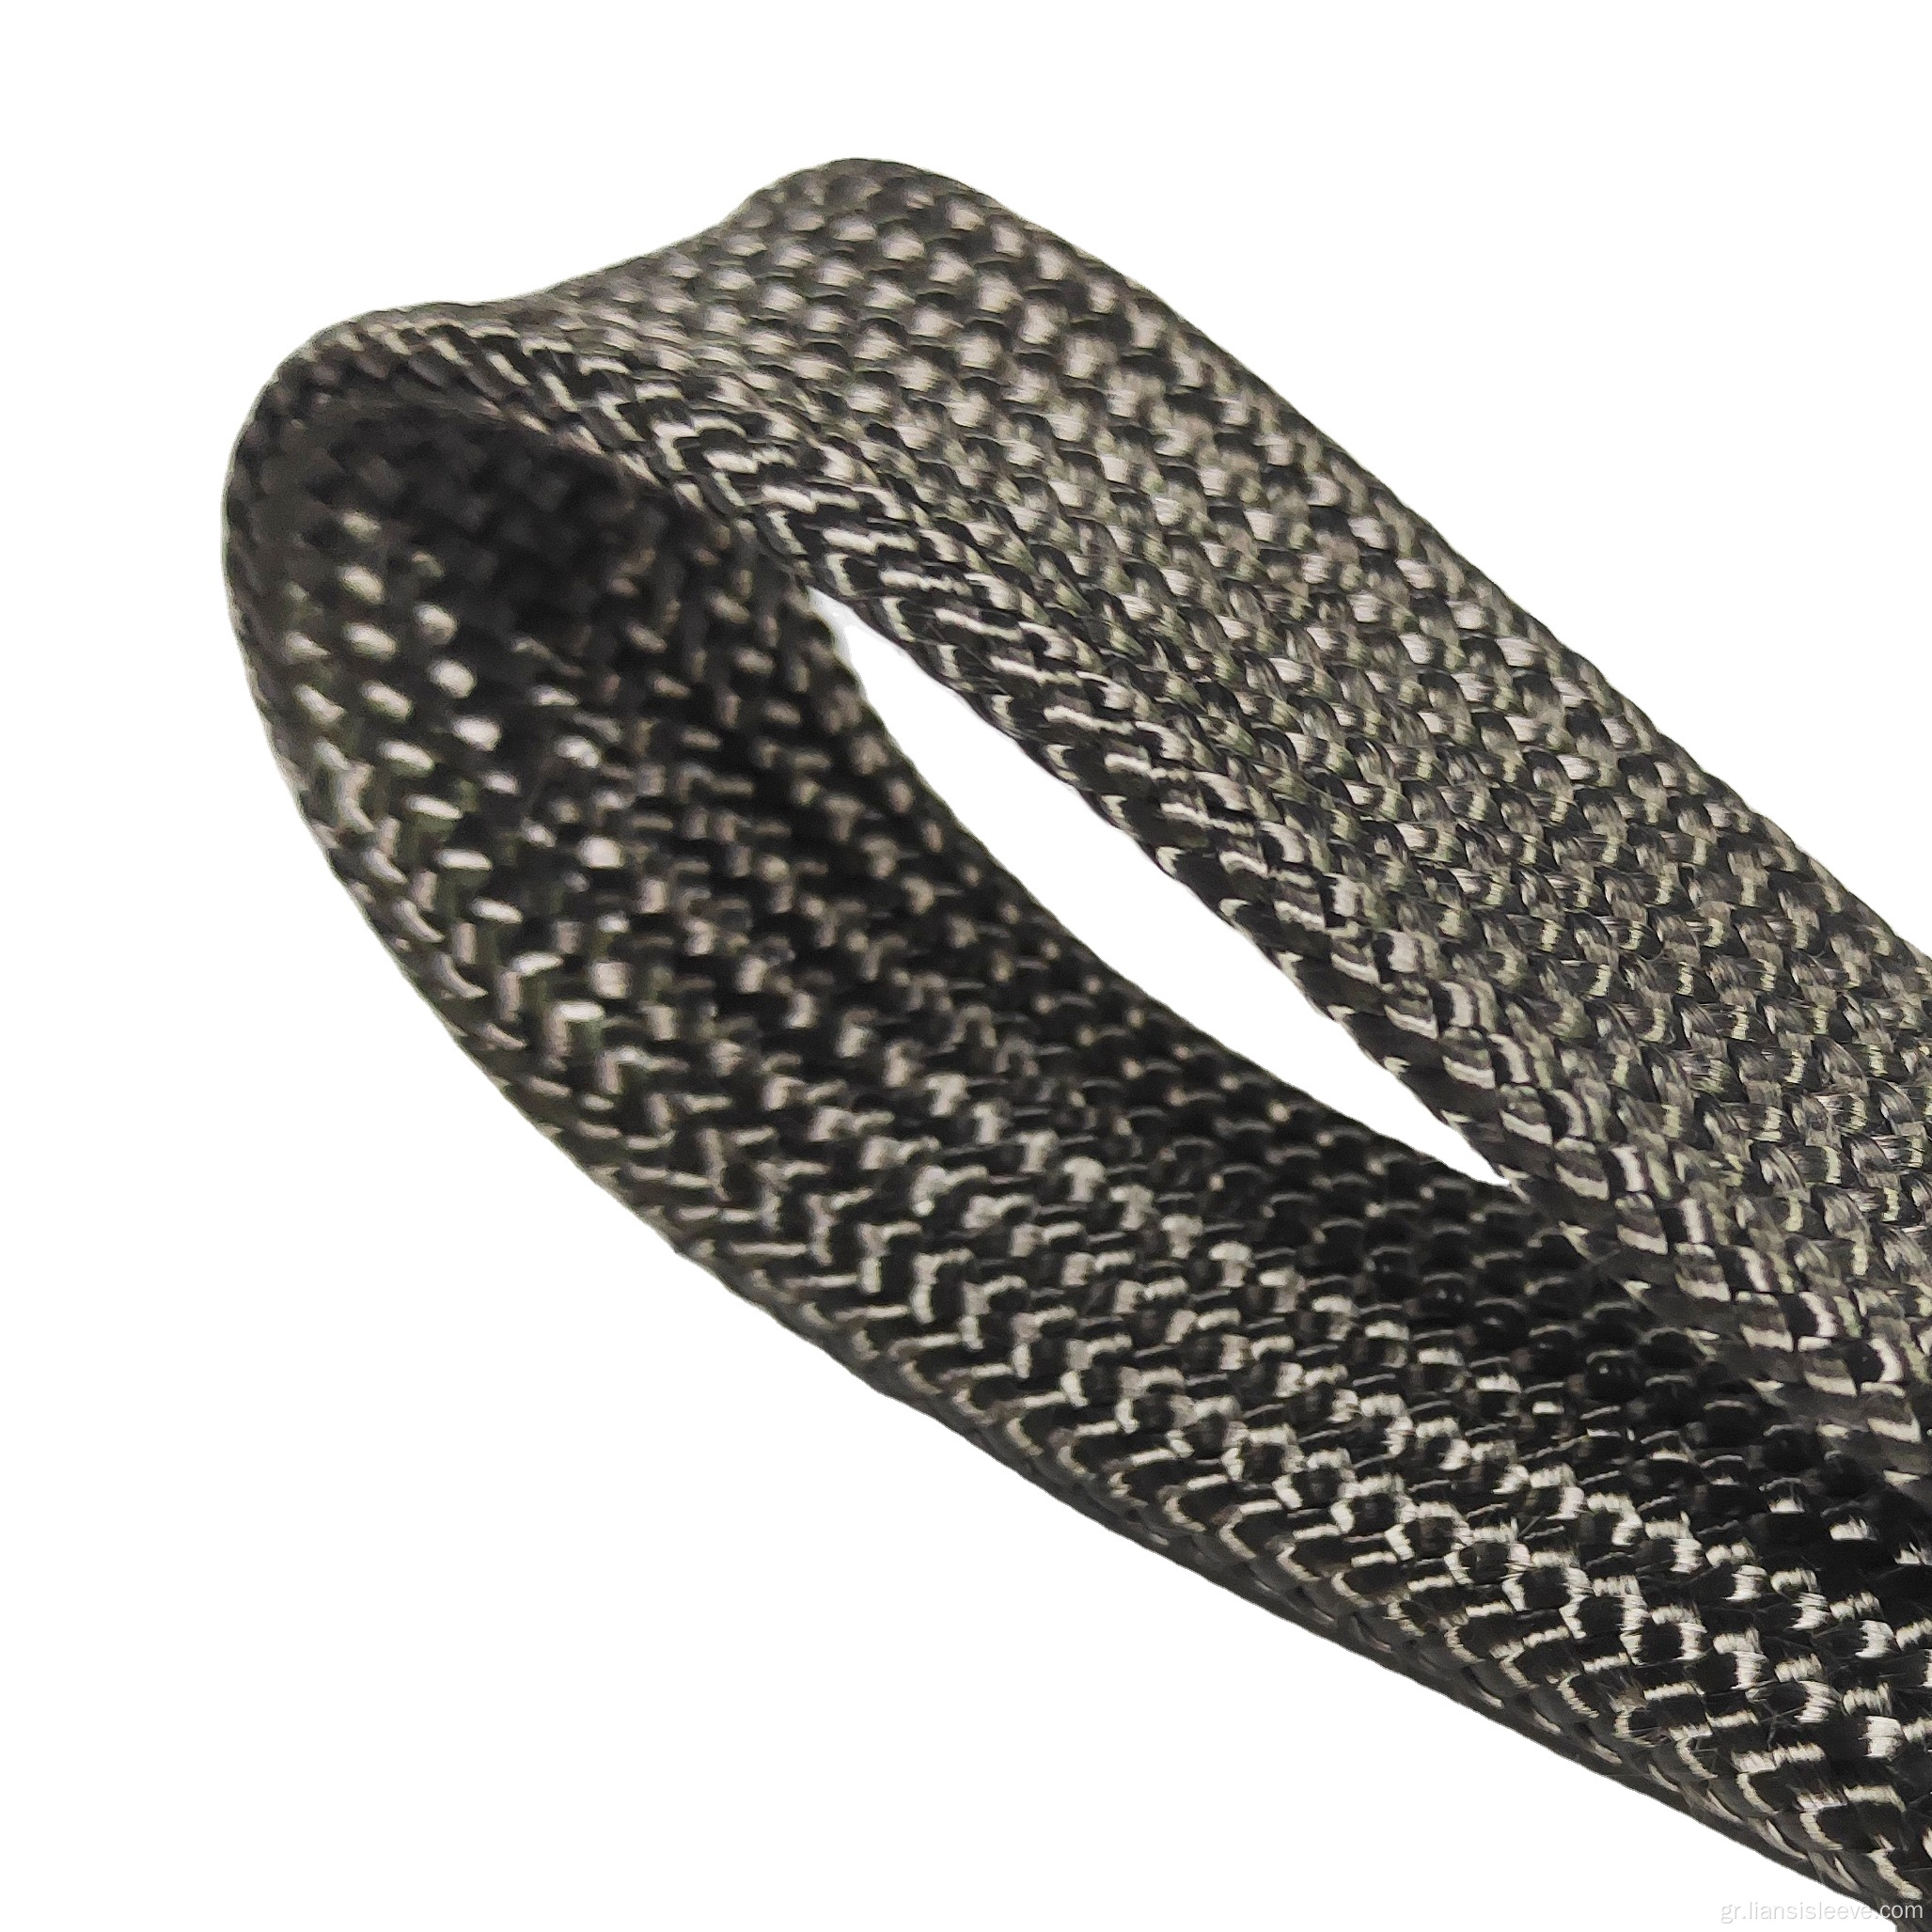 Αντίσταση υψηλής θερμοκρασίας Carbon Braid Cable Sleeve